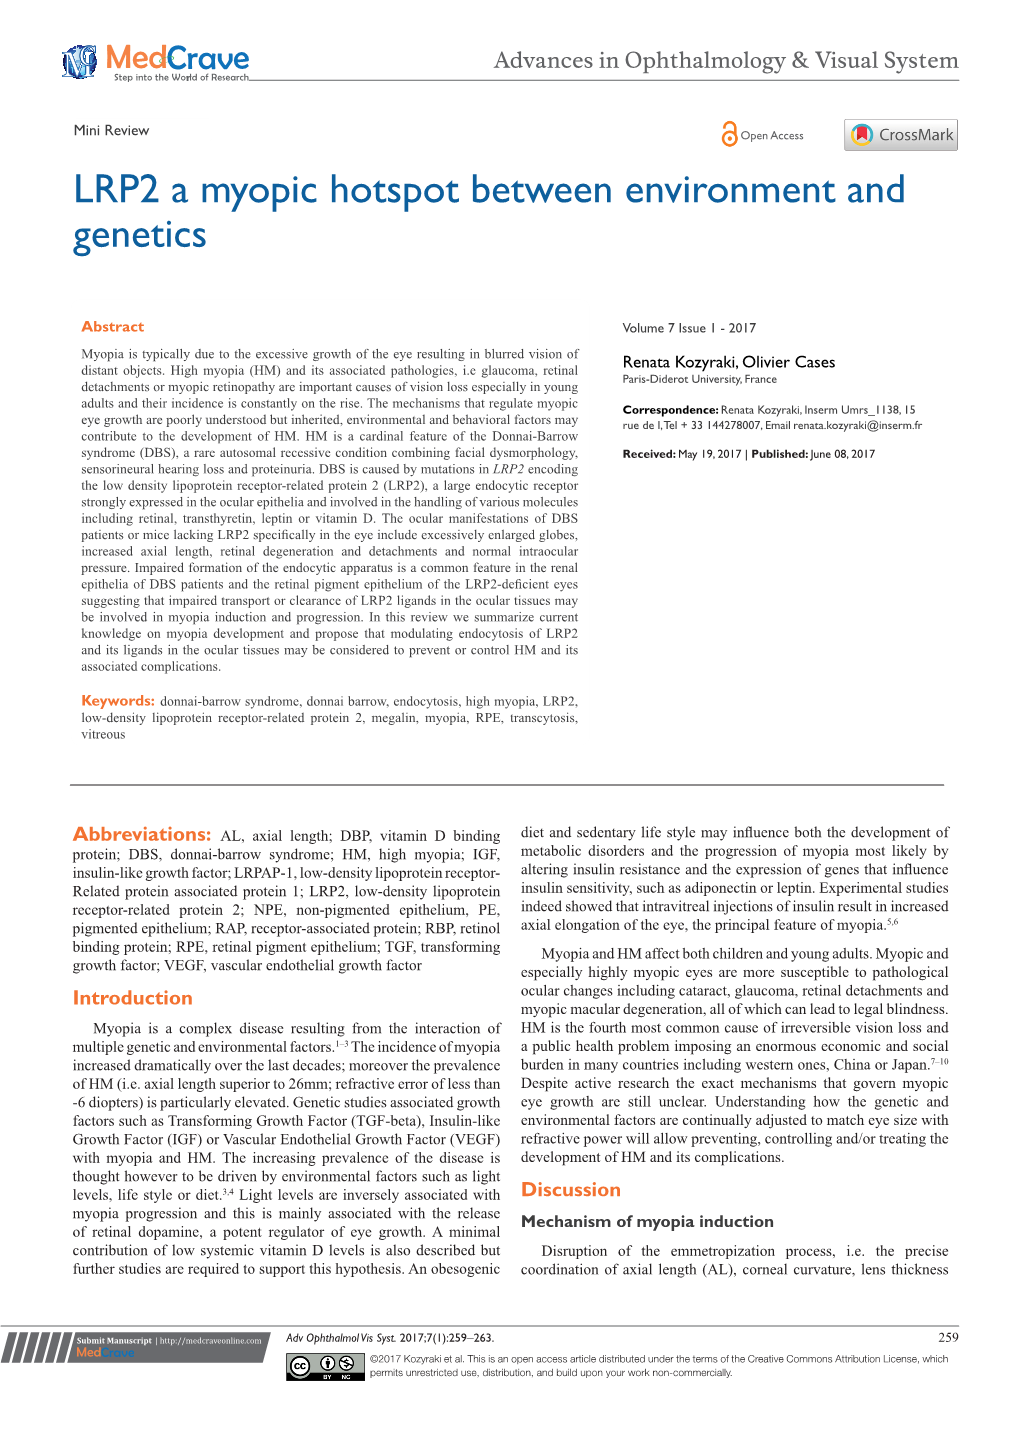 LRP2 a Myopic Hotspot Between Environment and Genetics